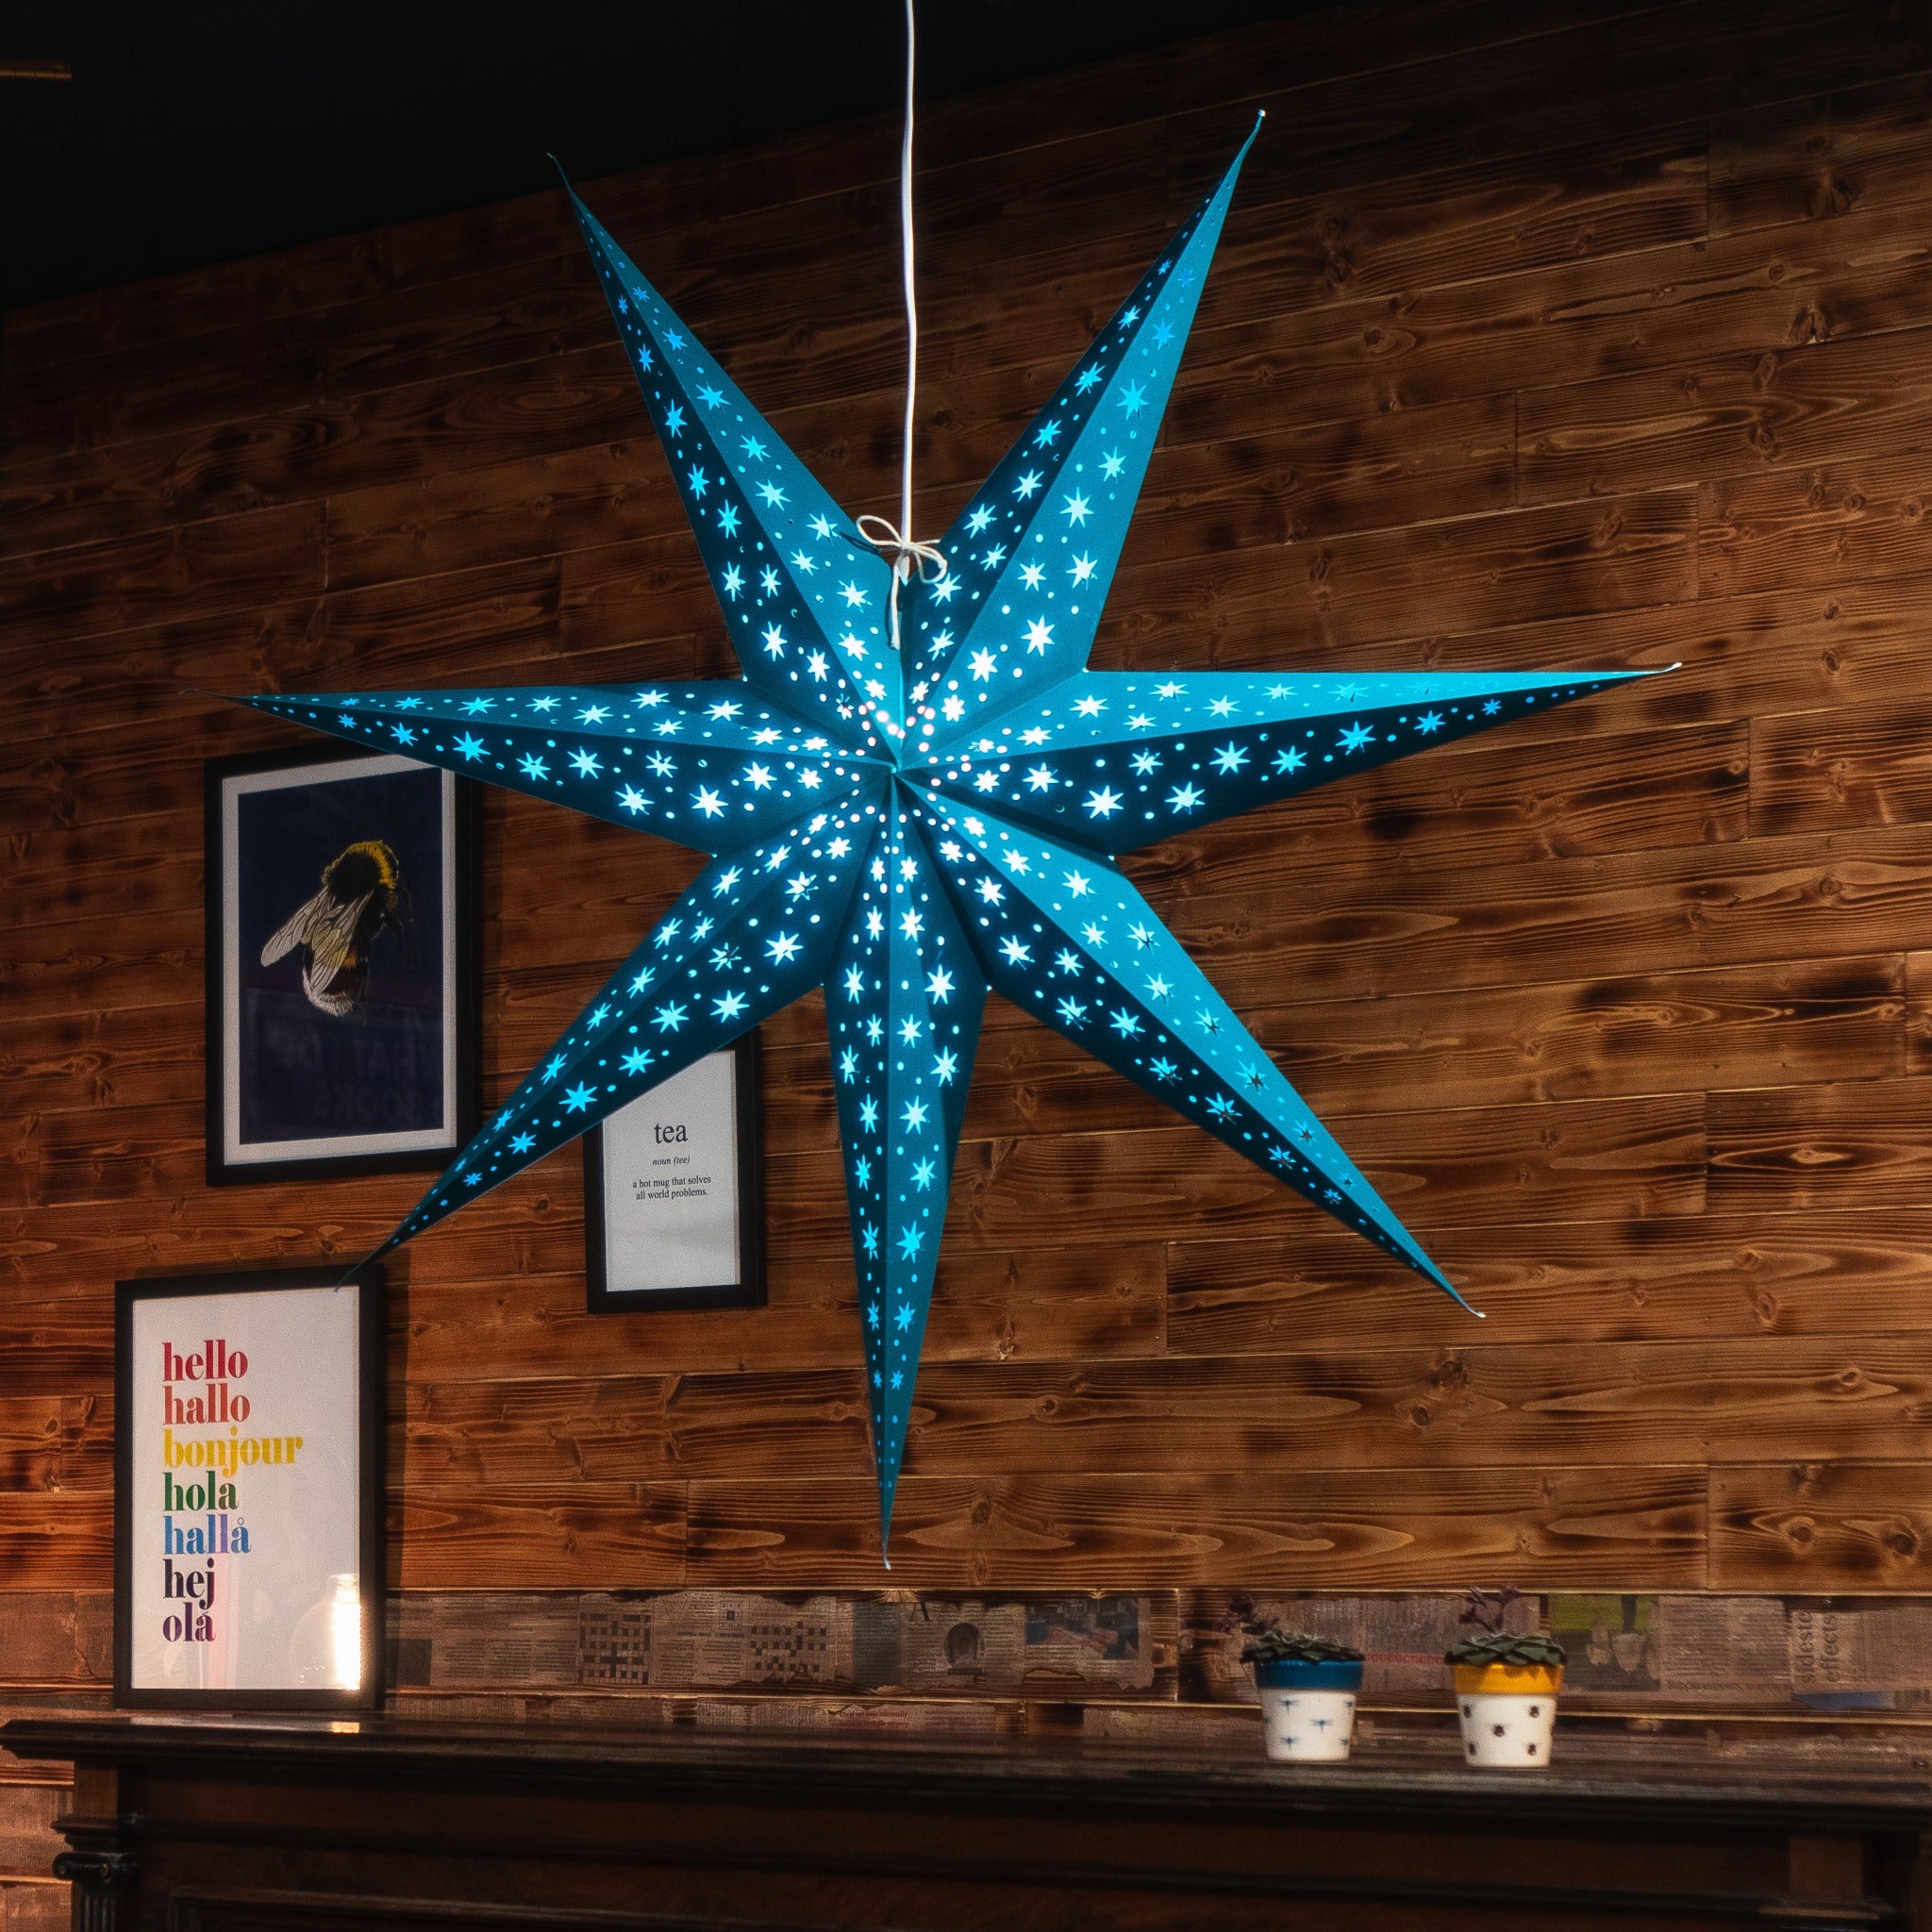 teal paper star lantern illuminated 